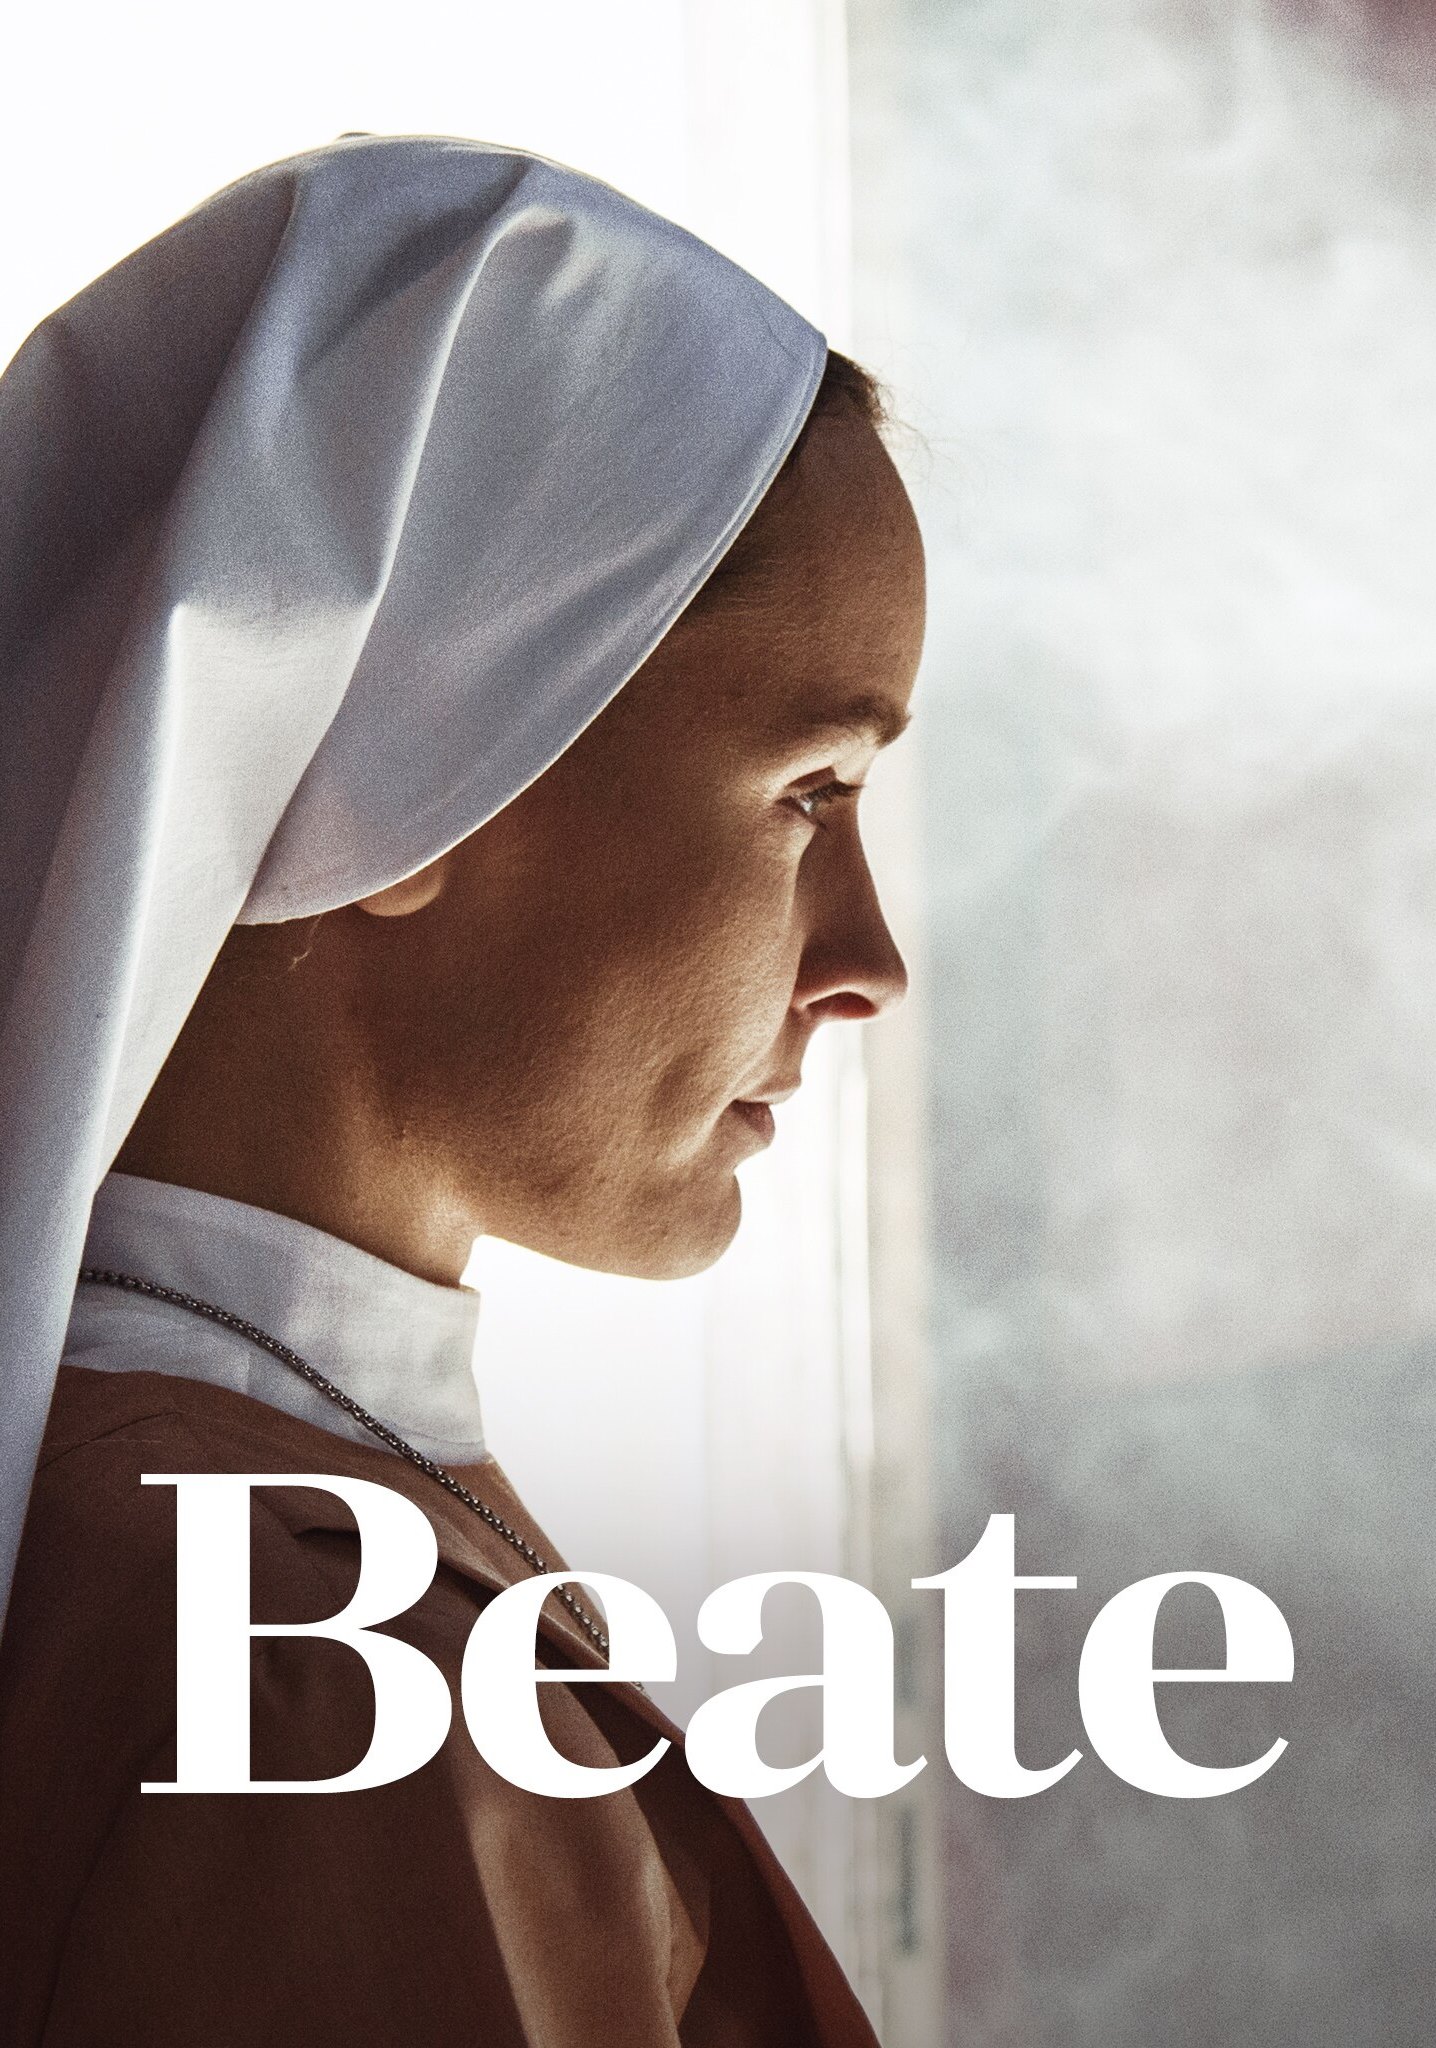 Beate [HD] (2018)